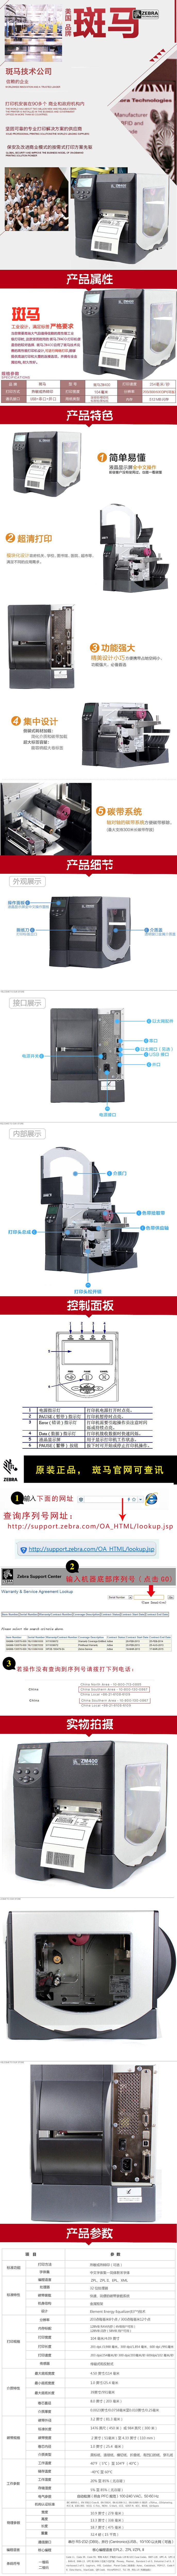 斑马ZM400条码机打印机600dpi工商打印机不干胶价格标签打印机